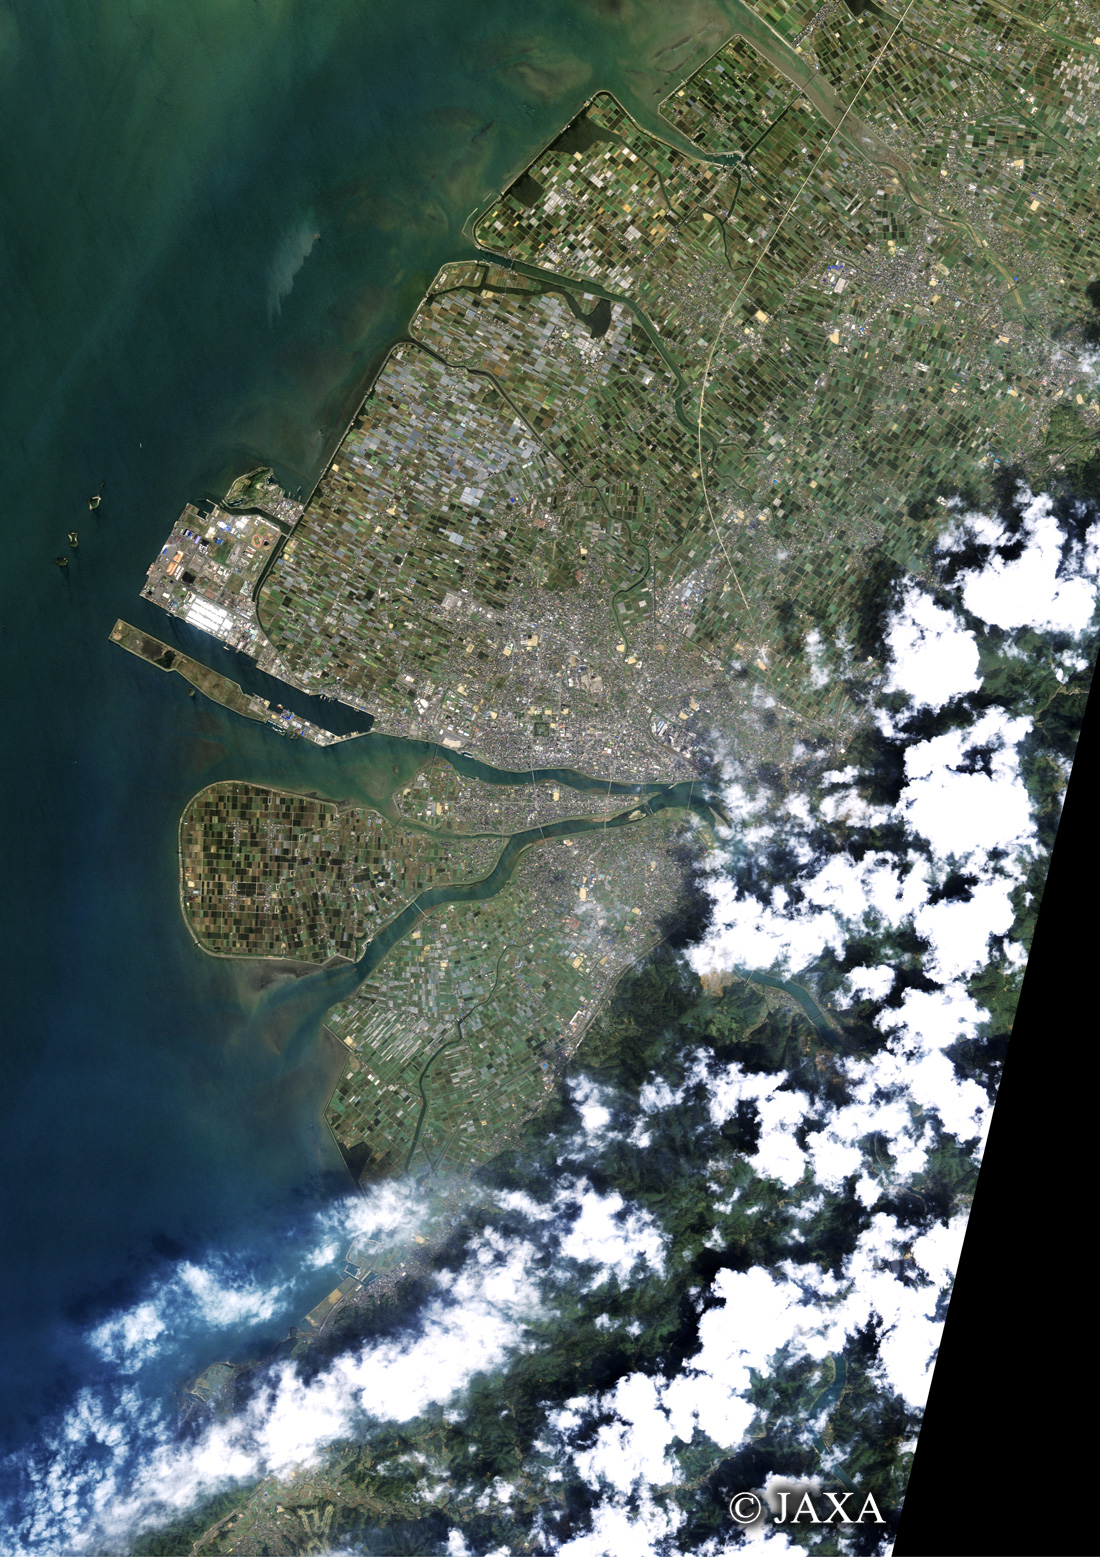 だいちから見た日本の都市 八代市:衛星画像